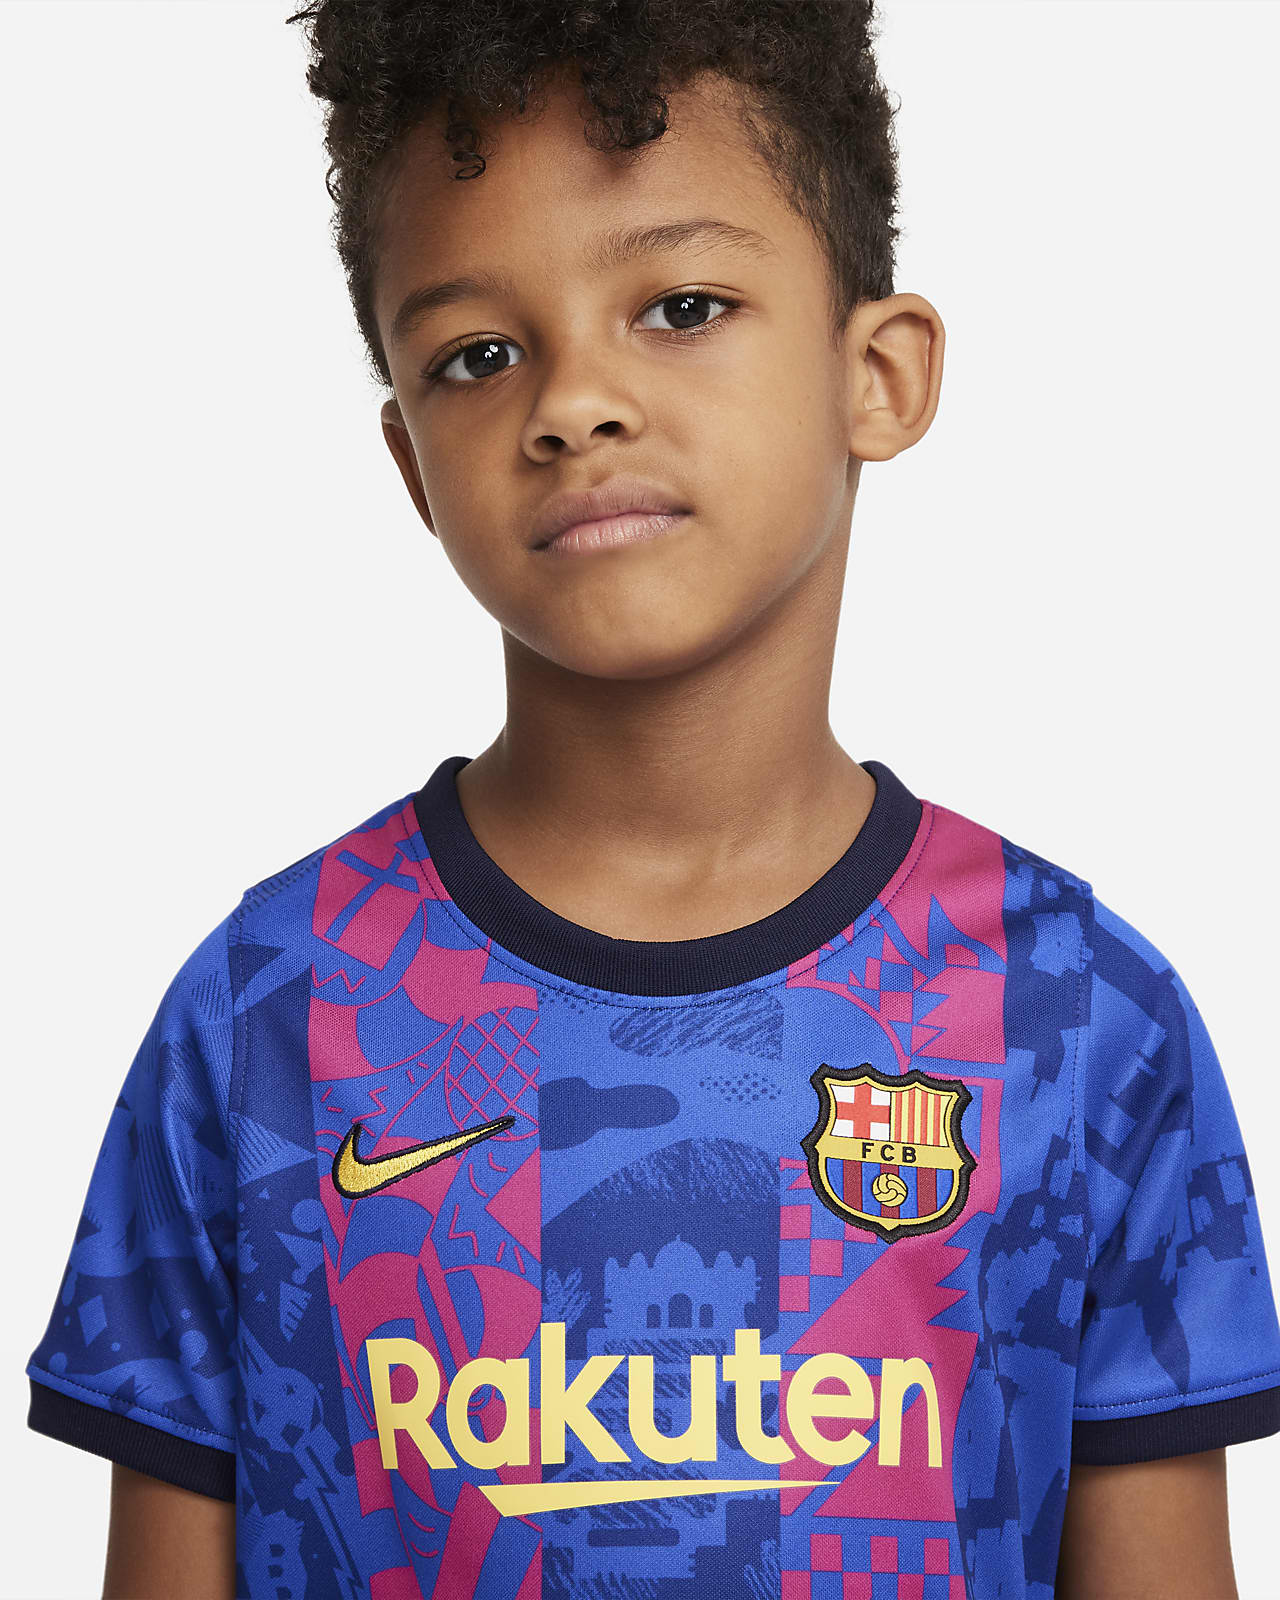 Station Ciro Clam FC Barcelona 2021/22 Third Little Kids' Soccer Kit. Nike.com